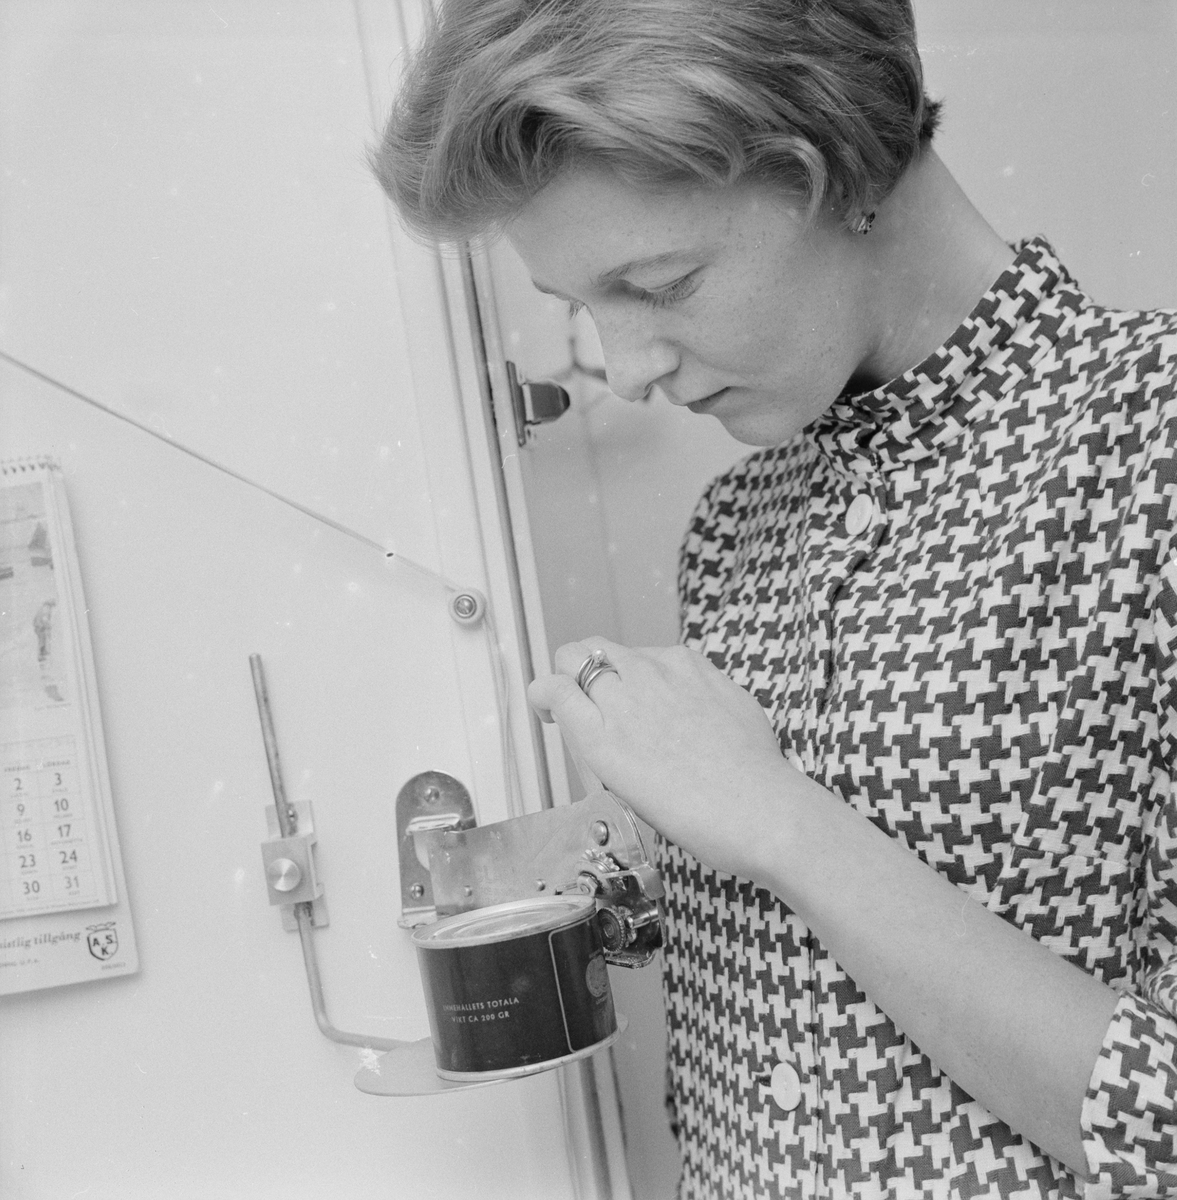 Ingrid Gustafson öppnar en konservburk, Uppsala 1959